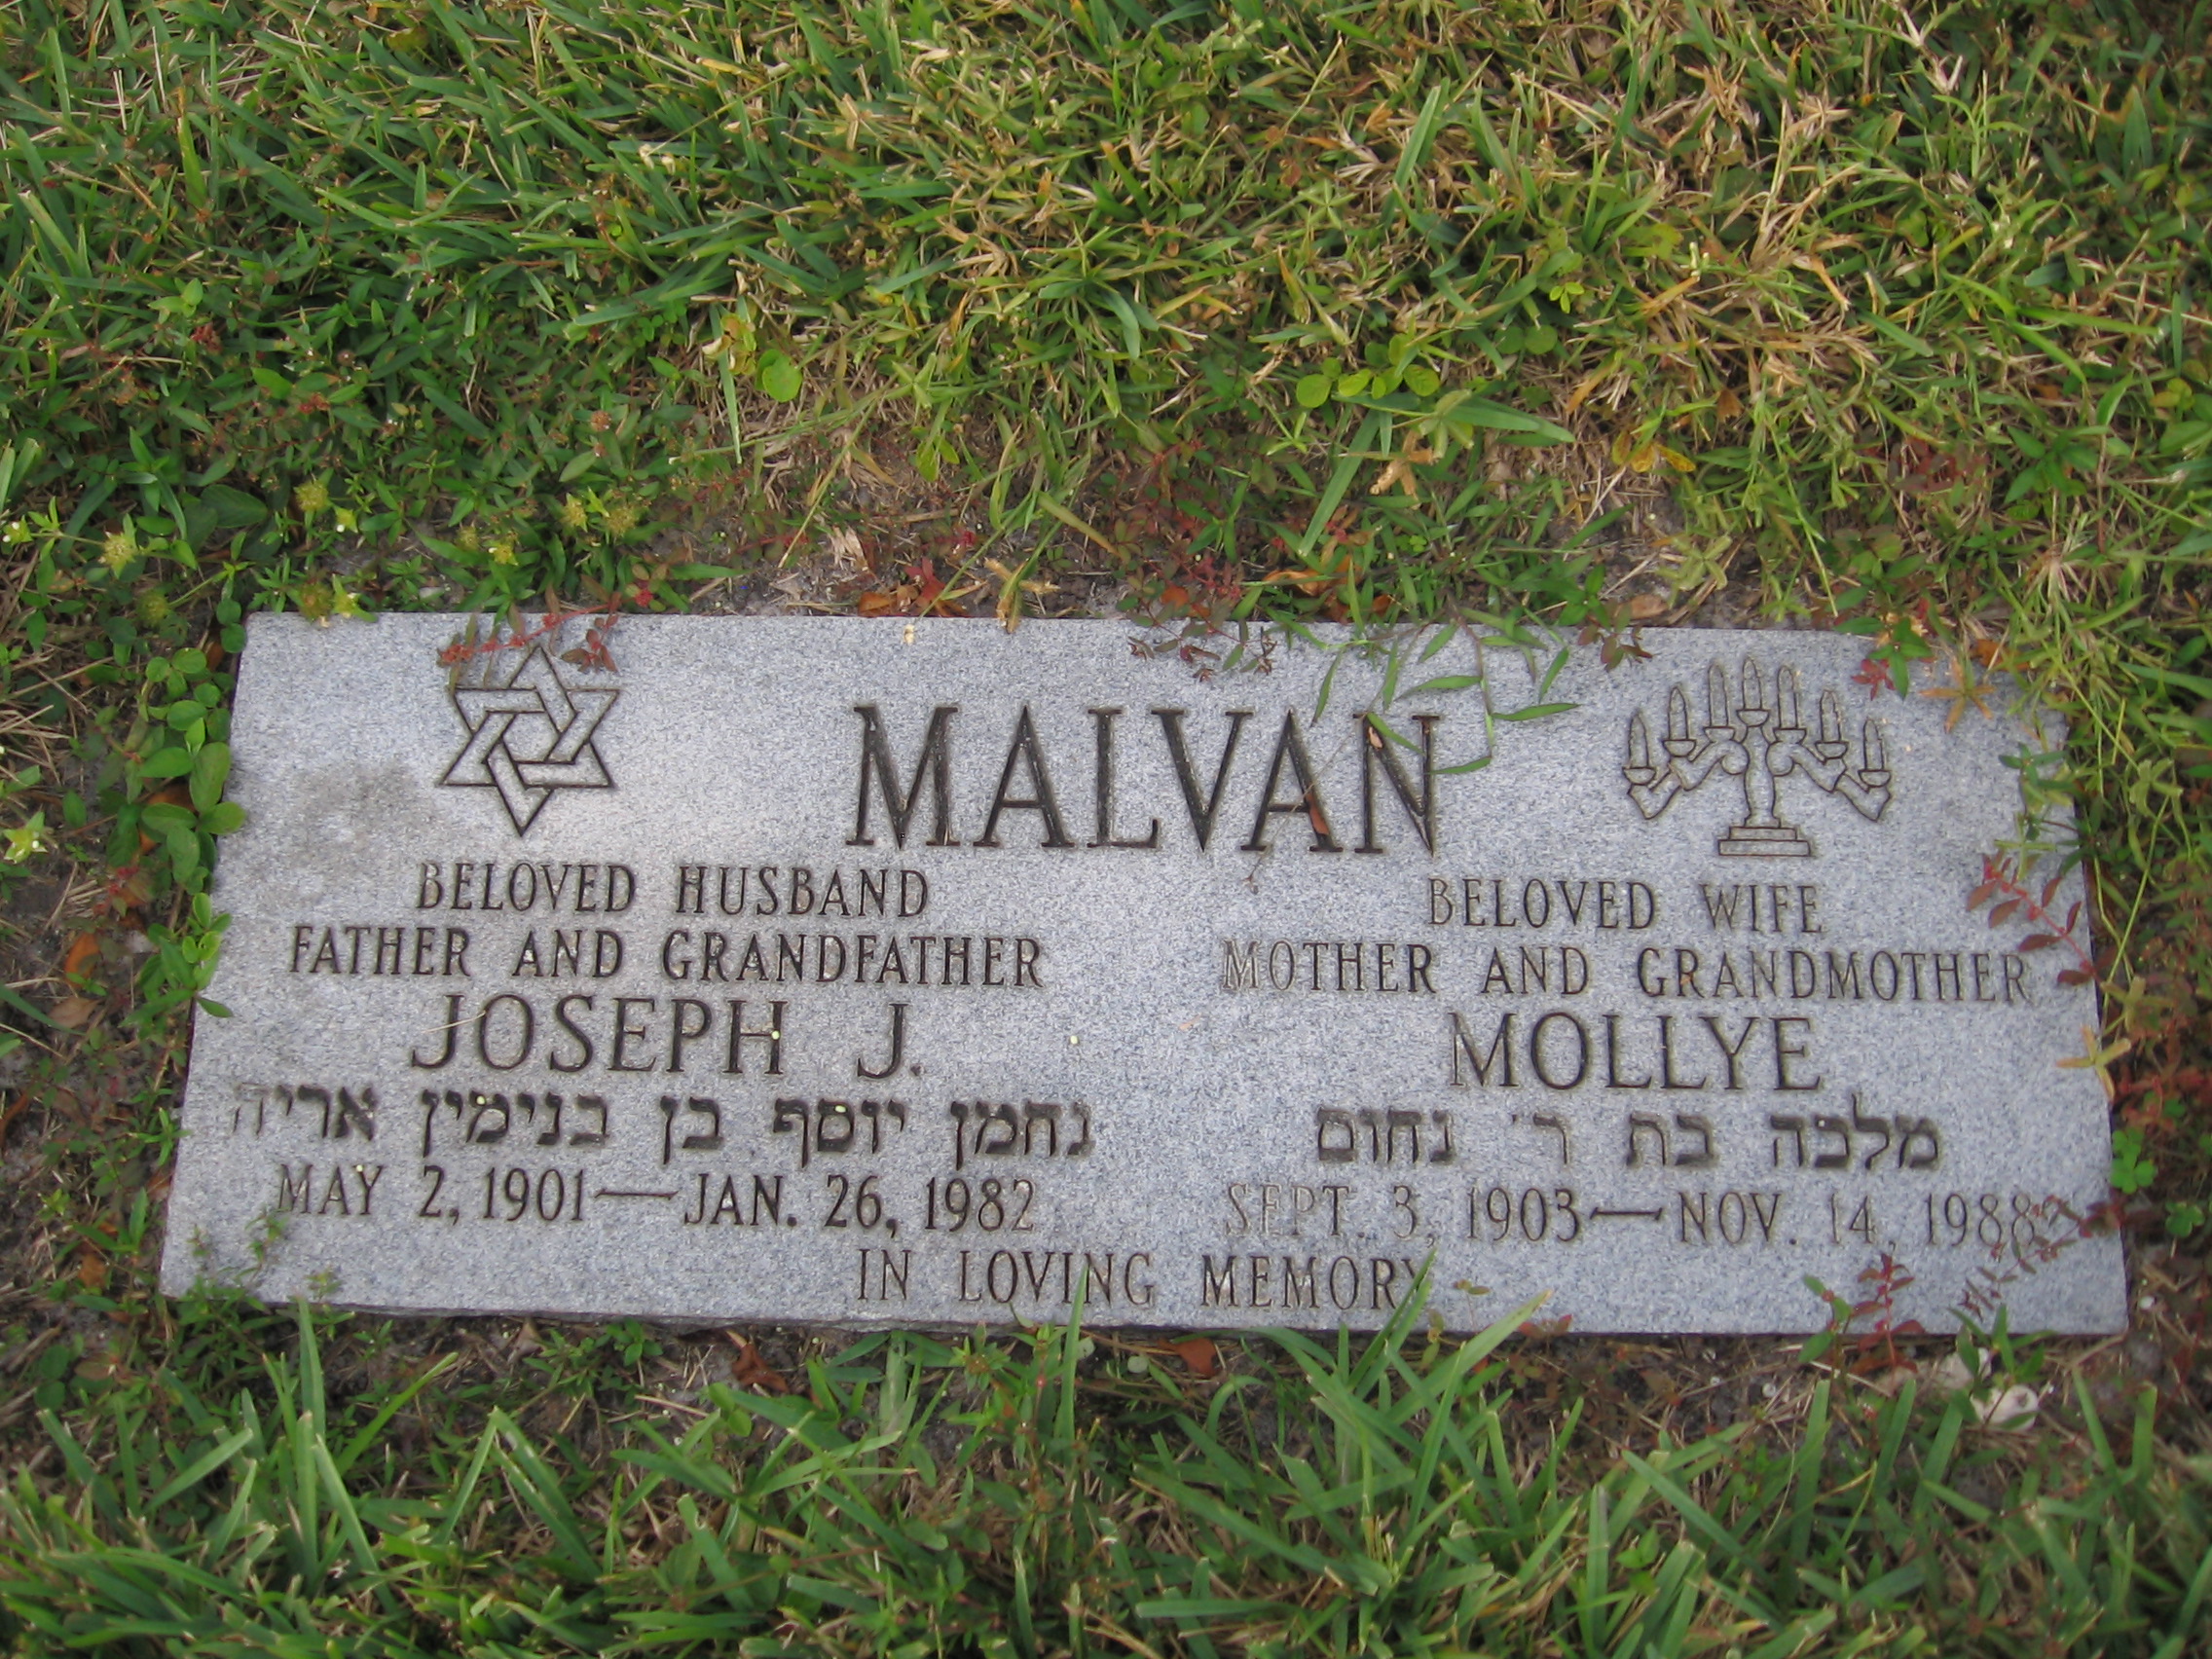 Joseph J Malvan